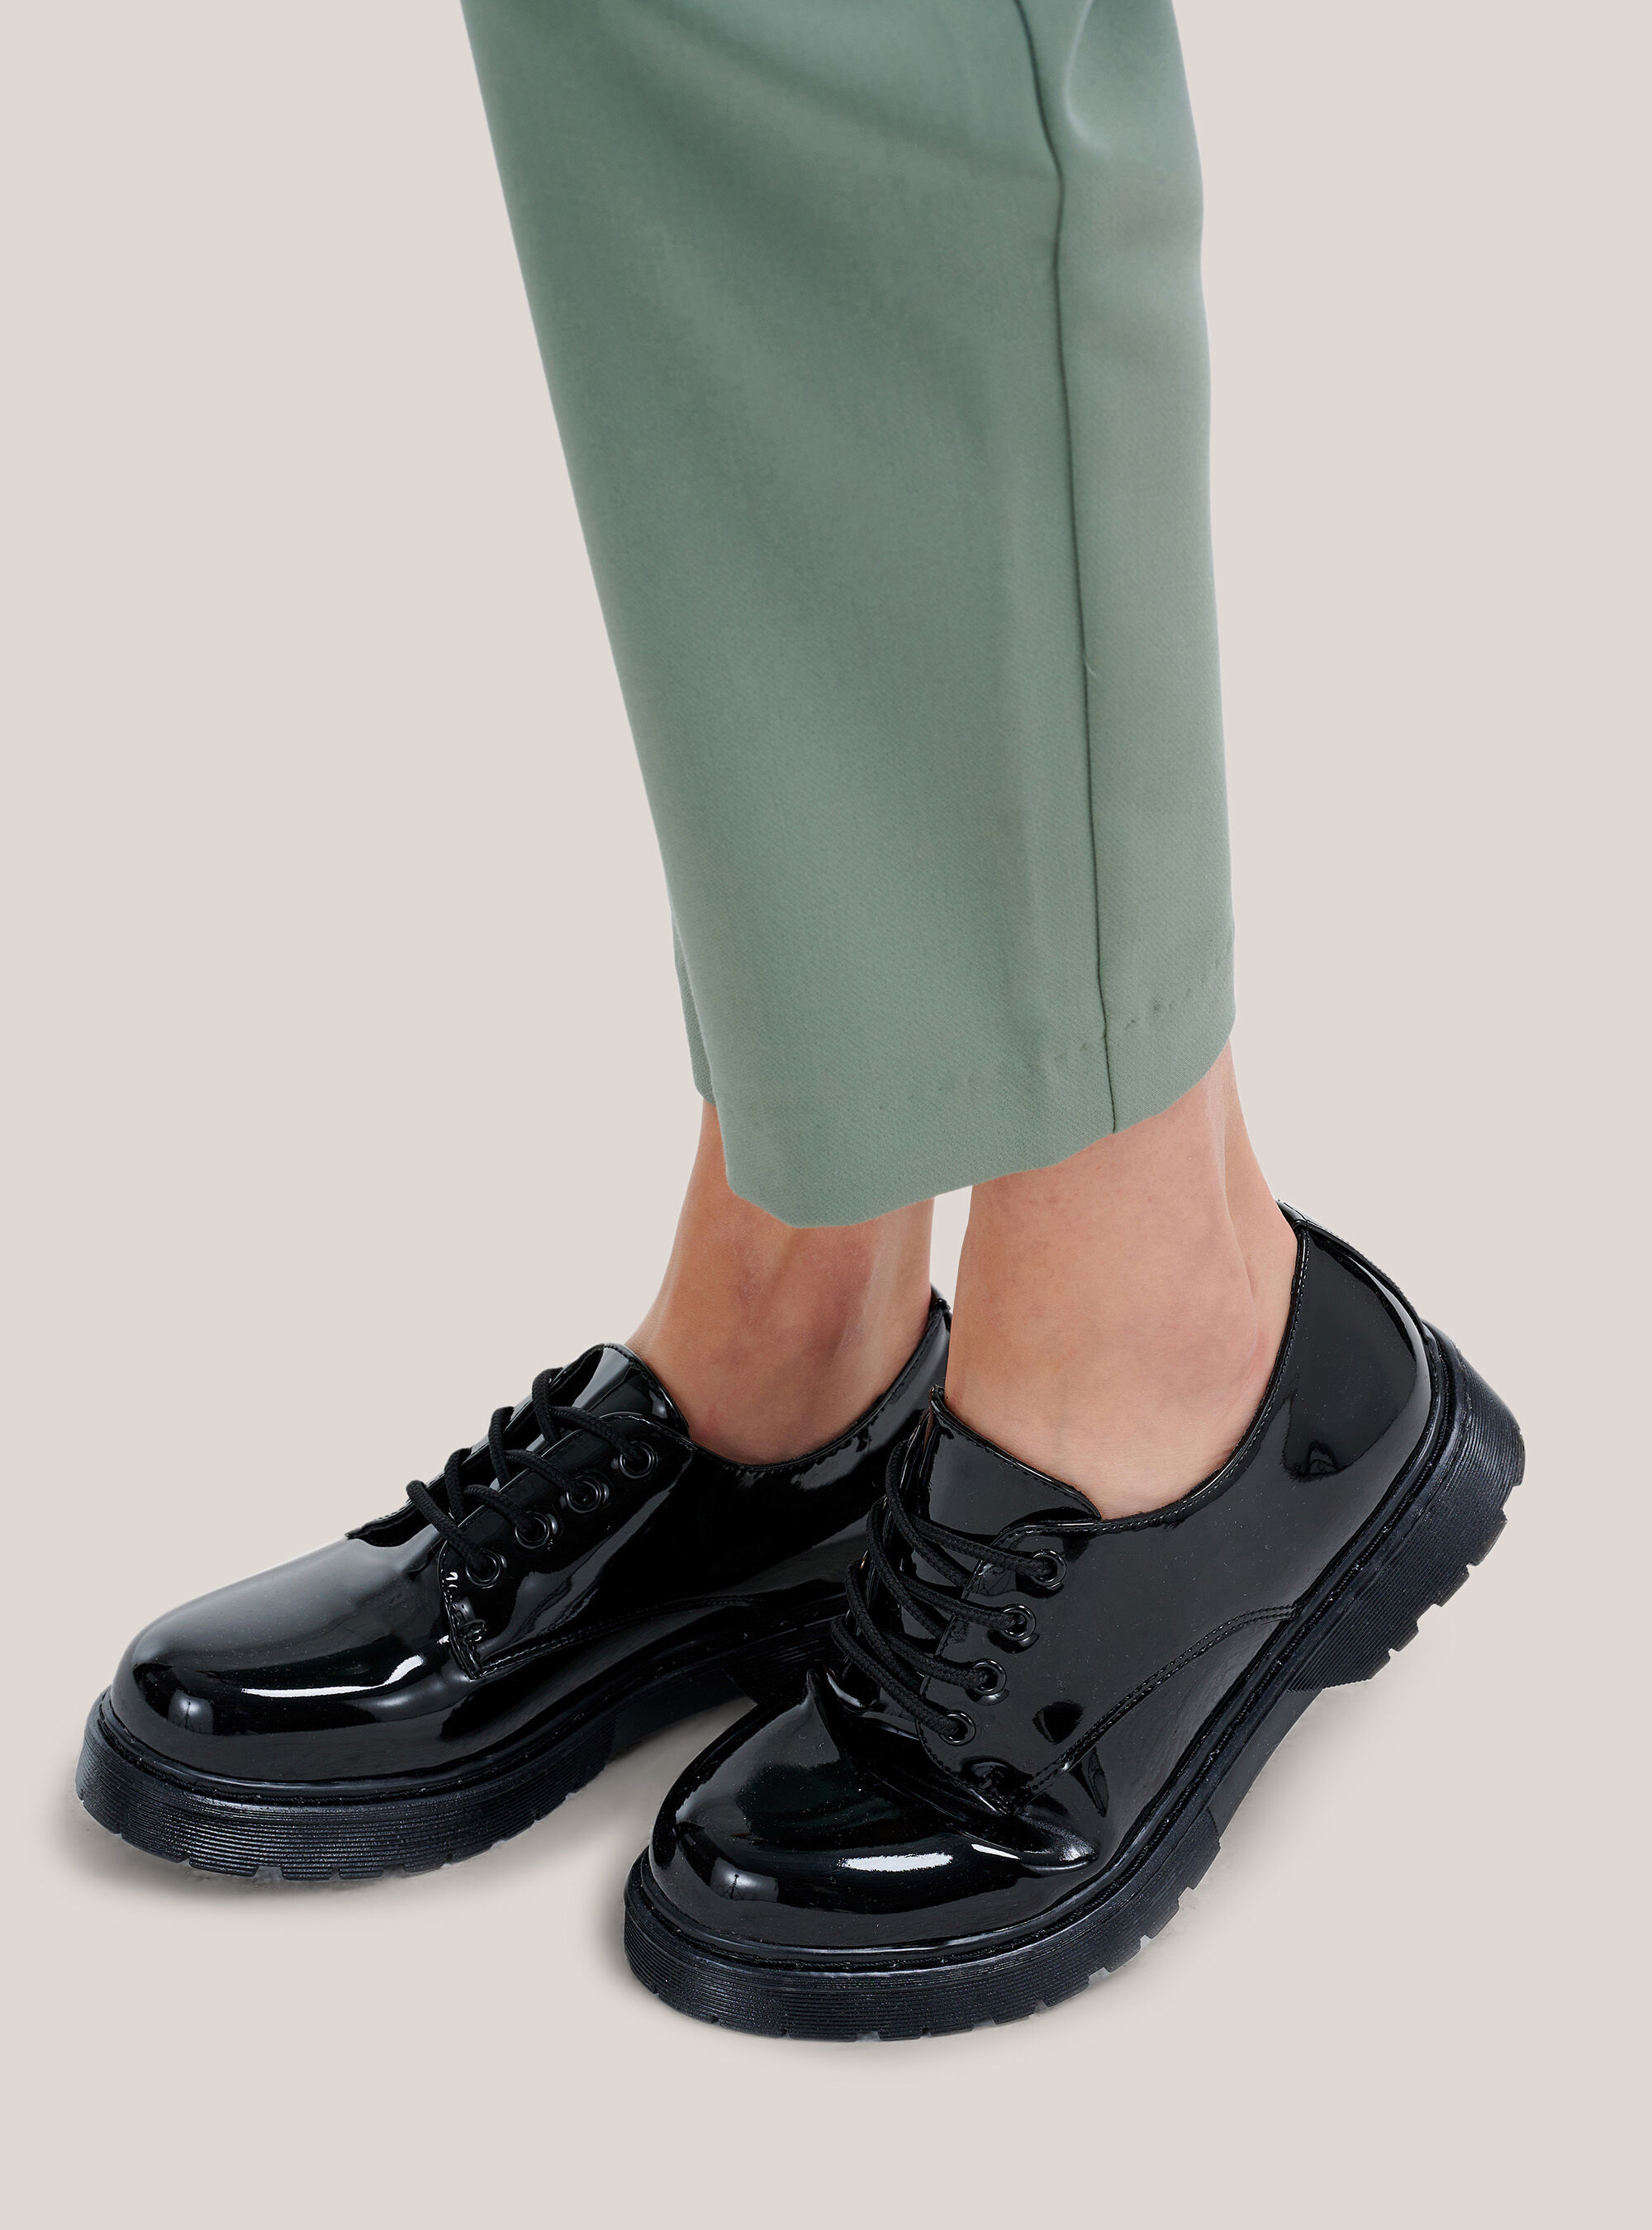 Scarpe Donna: sandali e sneakers | Acquista online su Alcott